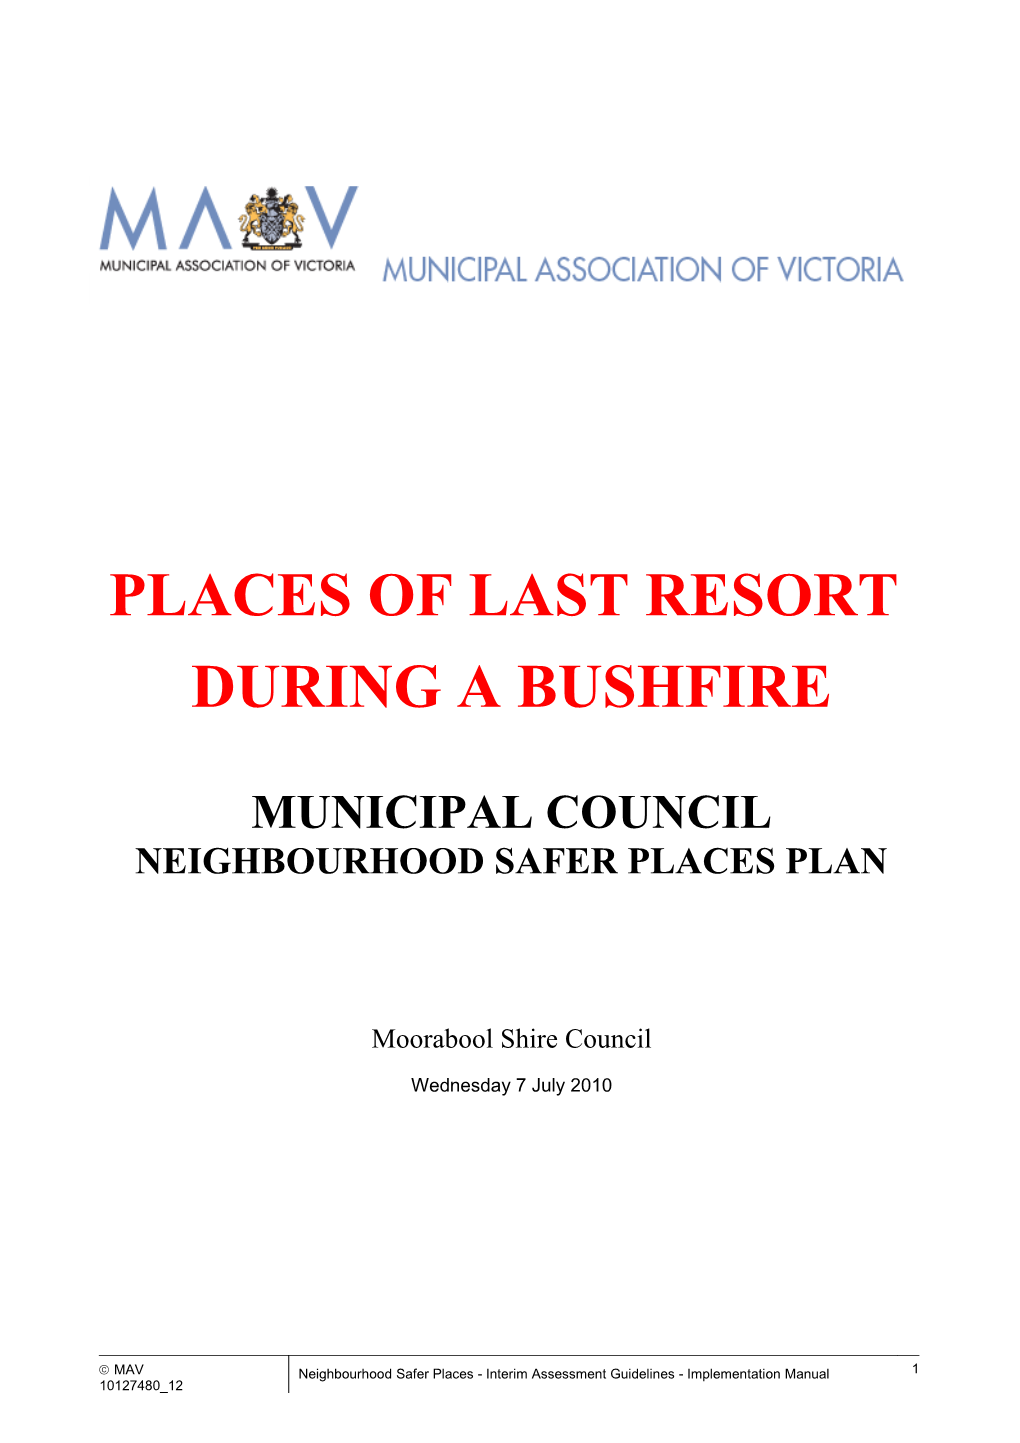 Municipal Council Neighbourhood Safer Placesplan